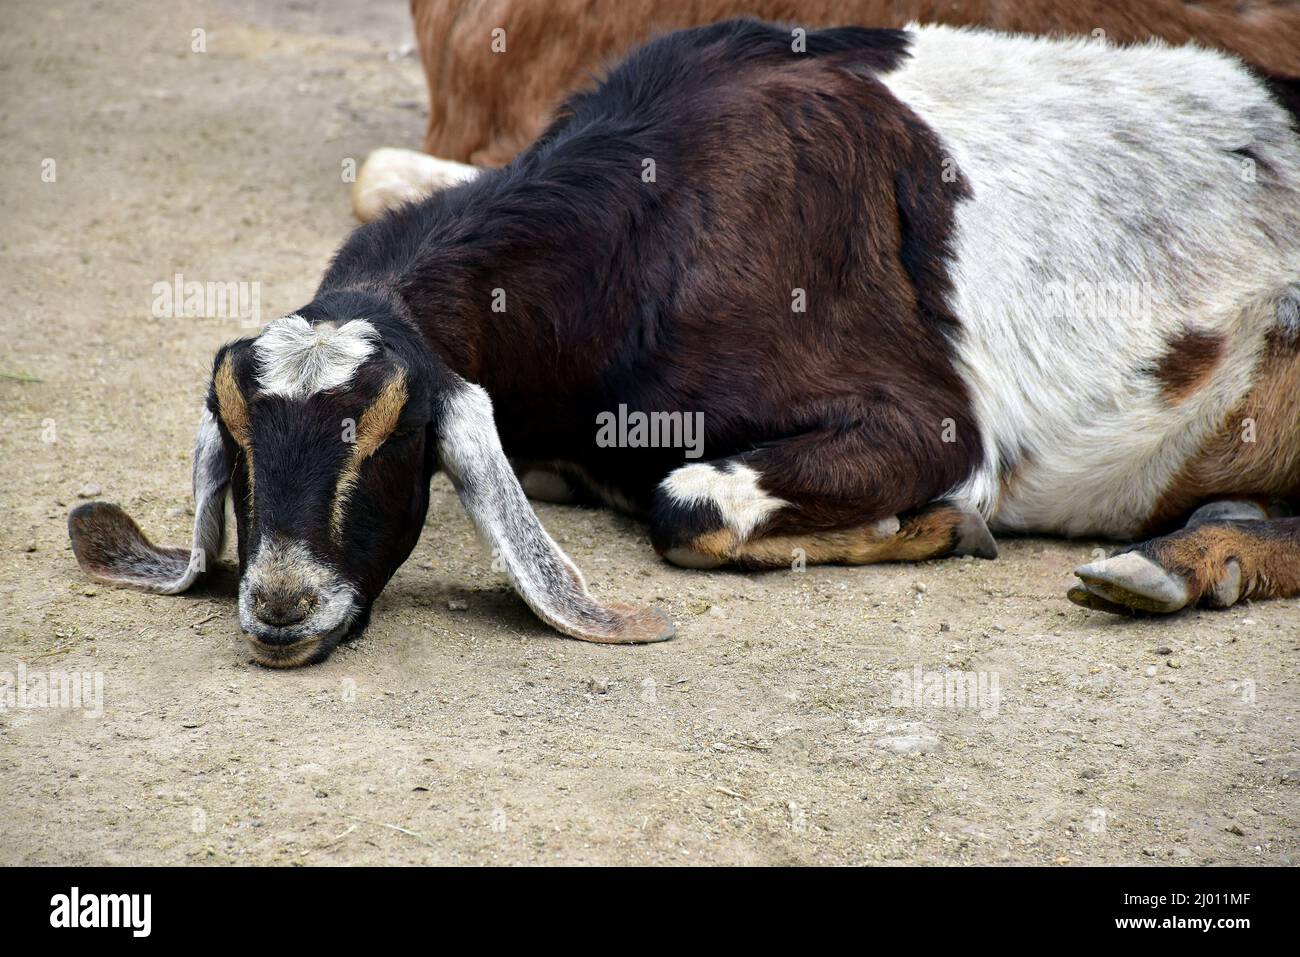 Chèvre noir, marron et blanc avec de longues oreilles couchées avec son Chin au sol Banque D'Images